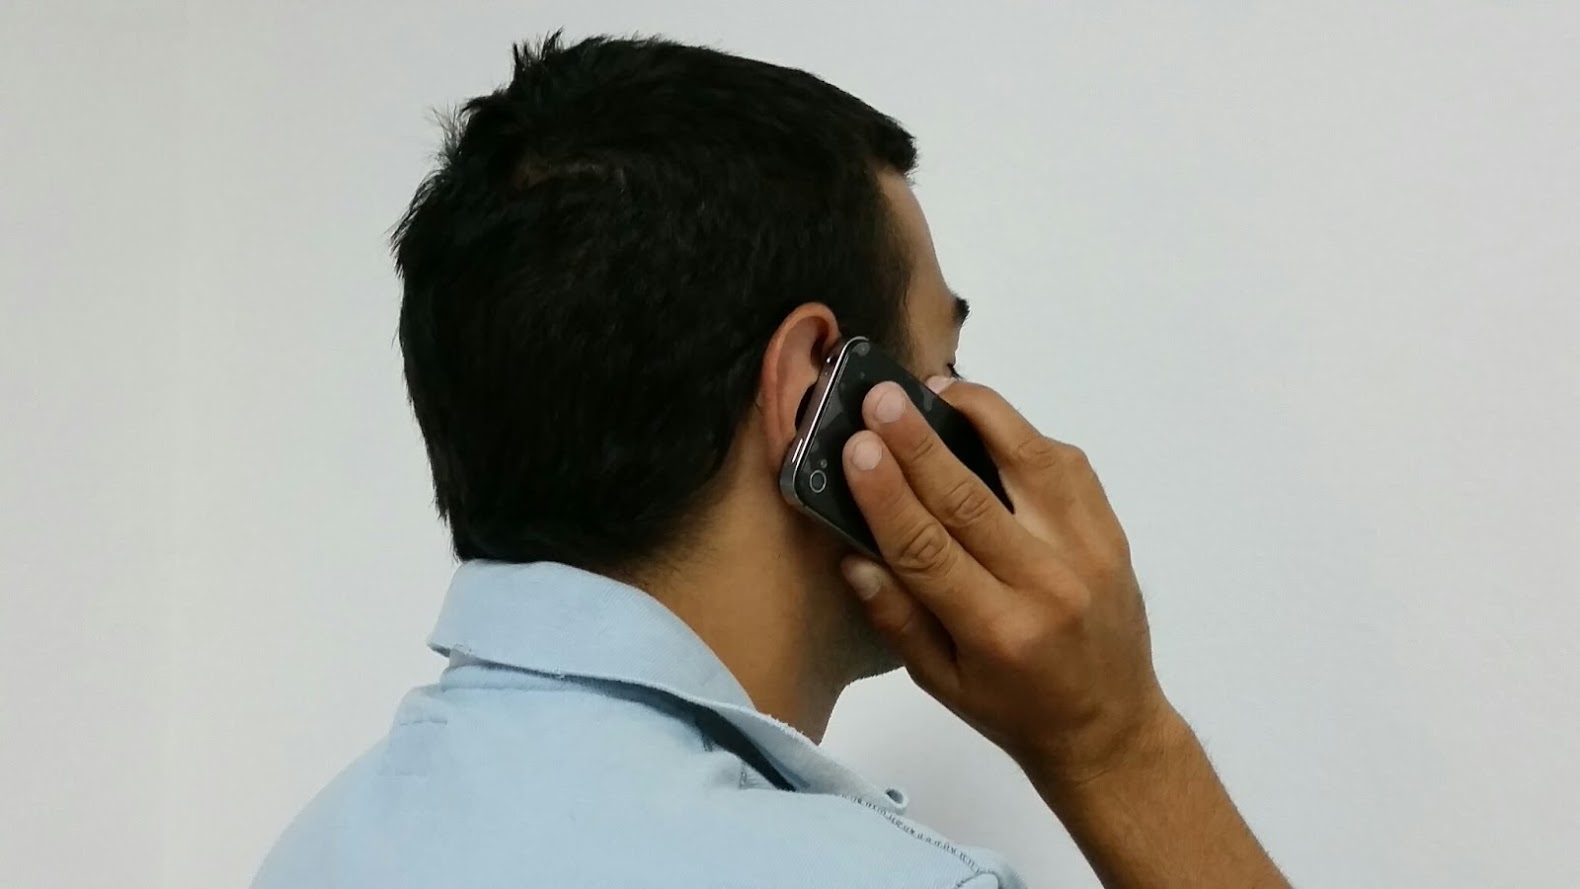 Quattro mila telefonate: preso stalker a Palma di Montechiaro